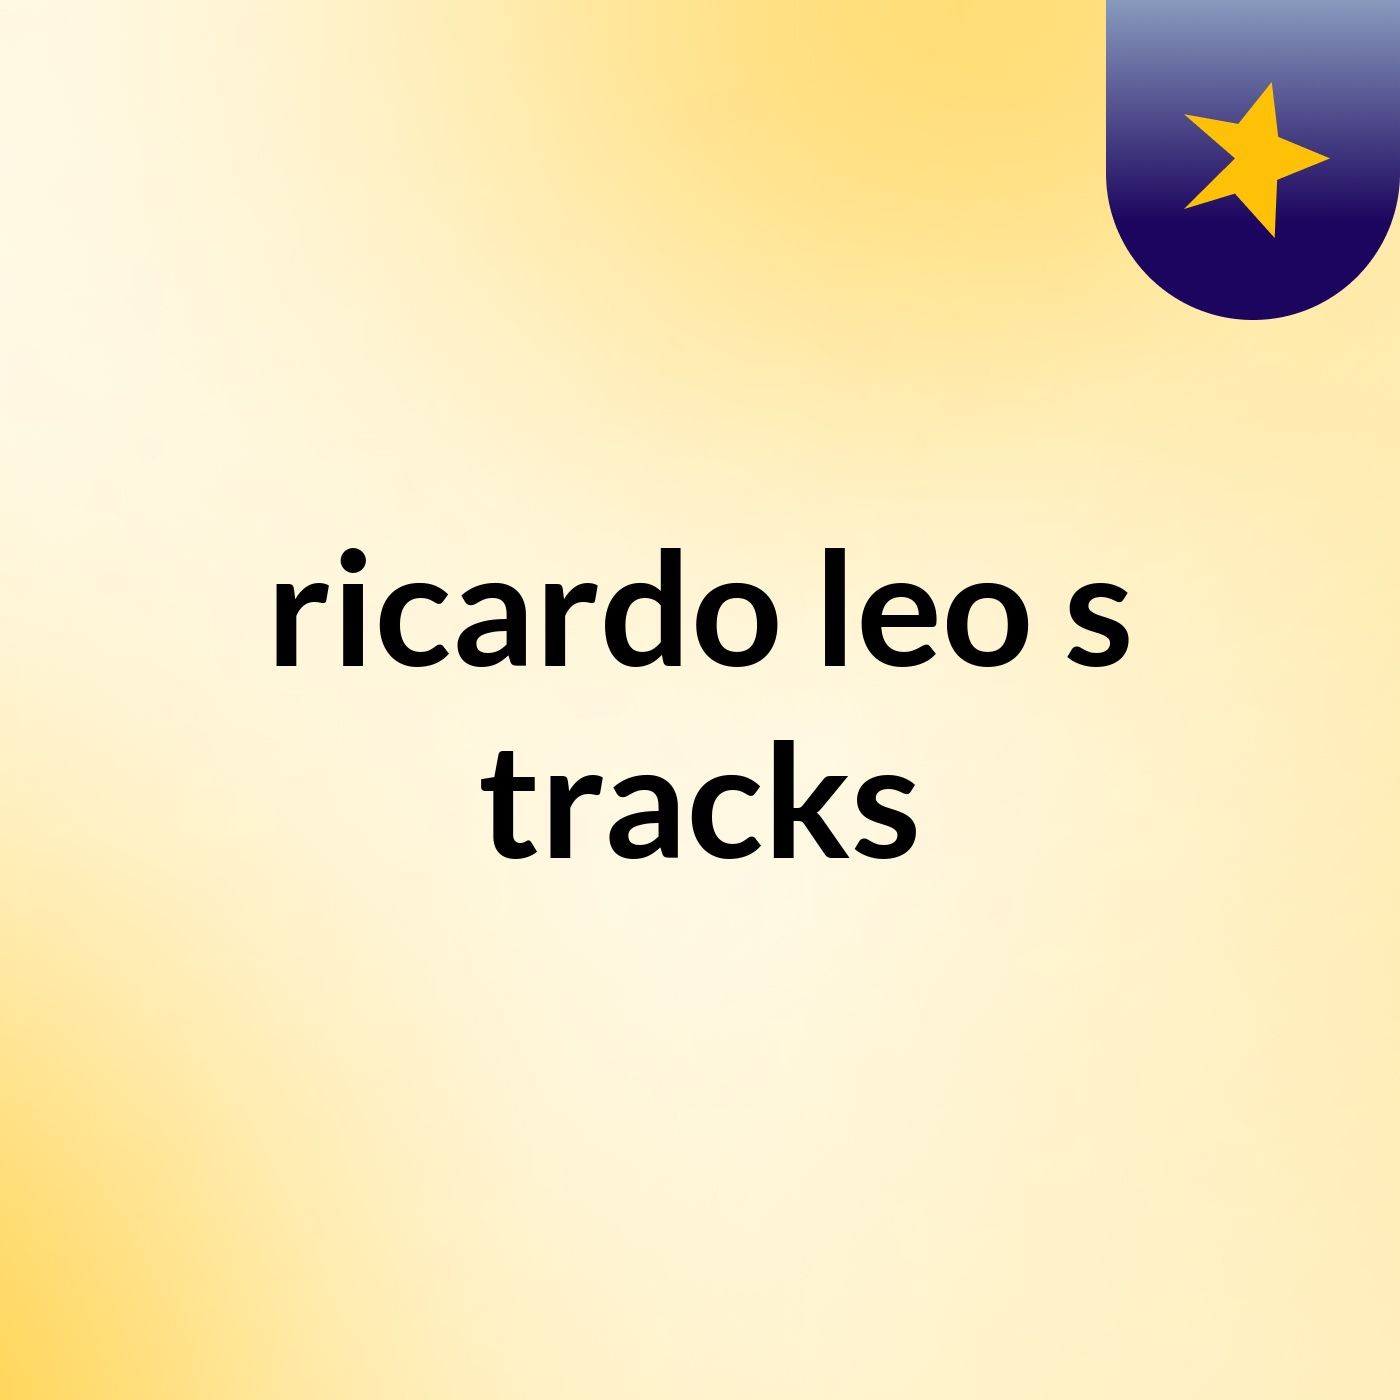 ricardo leo's tracks